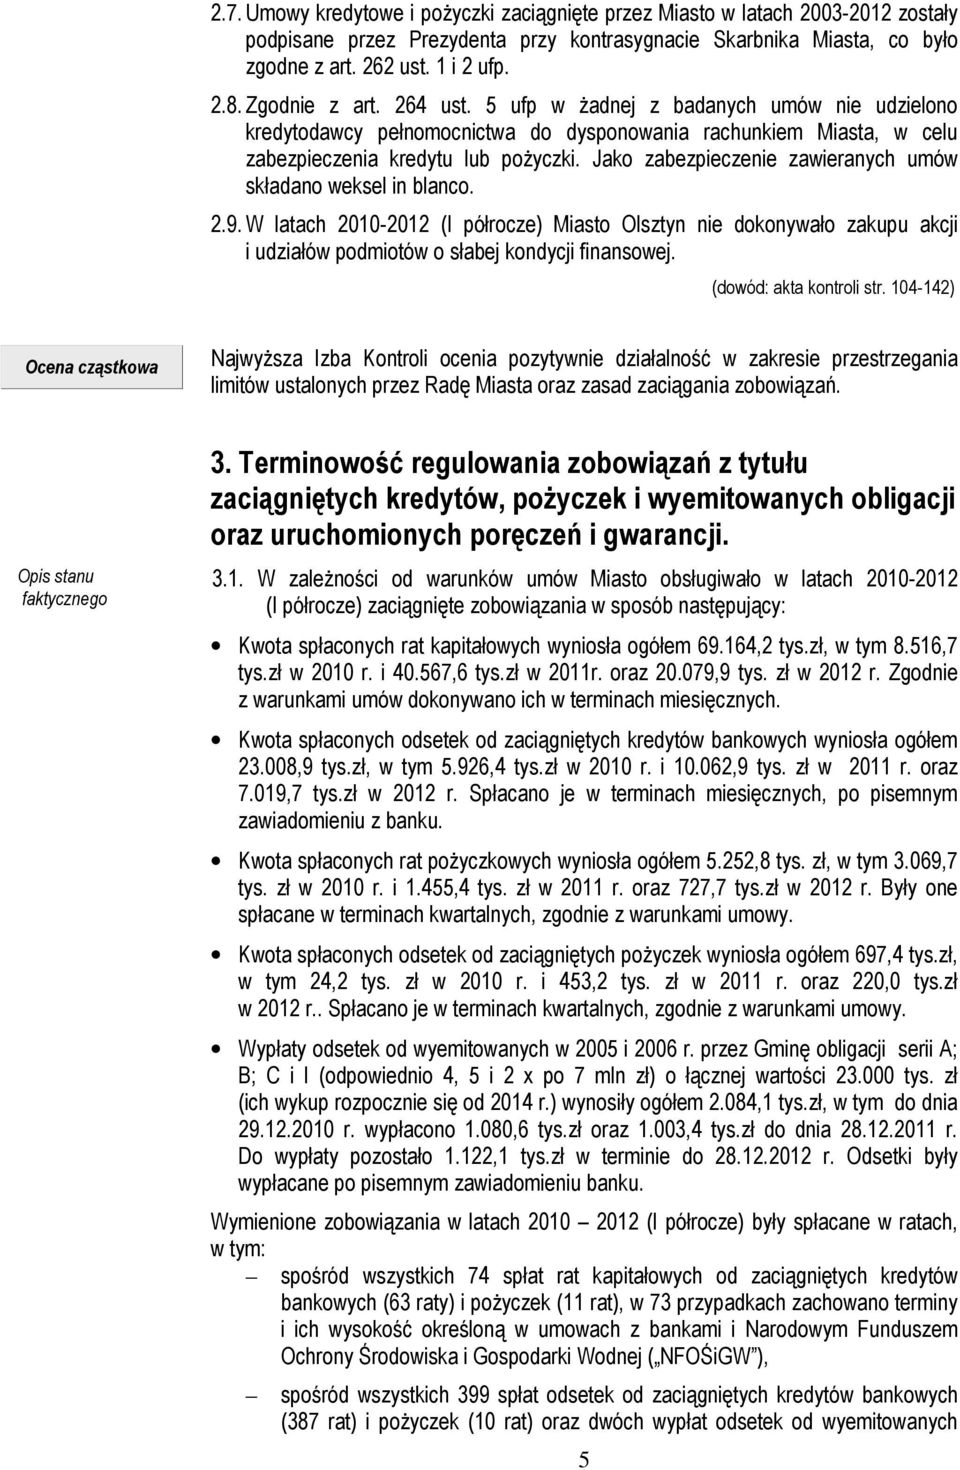 Jako zabezpieczenie zawieranych umów składano weksel in blanco. 2.9. W latach 2010-2012 (I półrocze) Miasto Olsztyn nie dokonywało zakupu akcji i udziałów podmiotów o słabej kondycji finansowej.